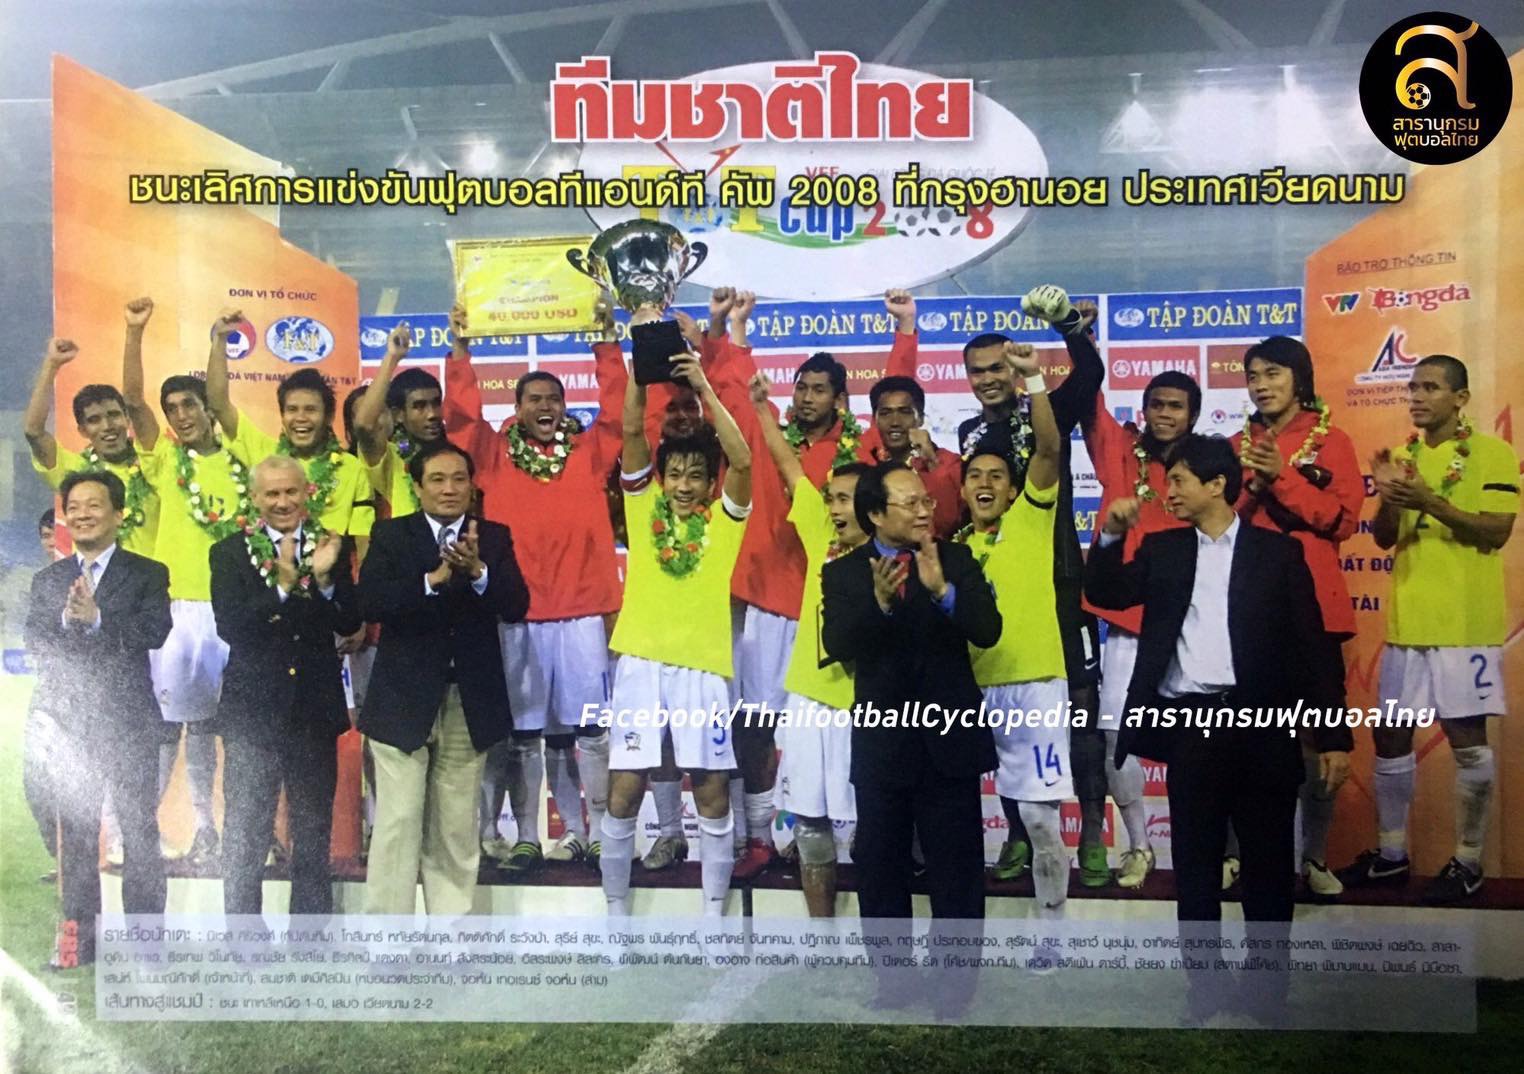 ทีมชาติไทยยุคปีเตอร์ รีด และชุดซีเกมส์